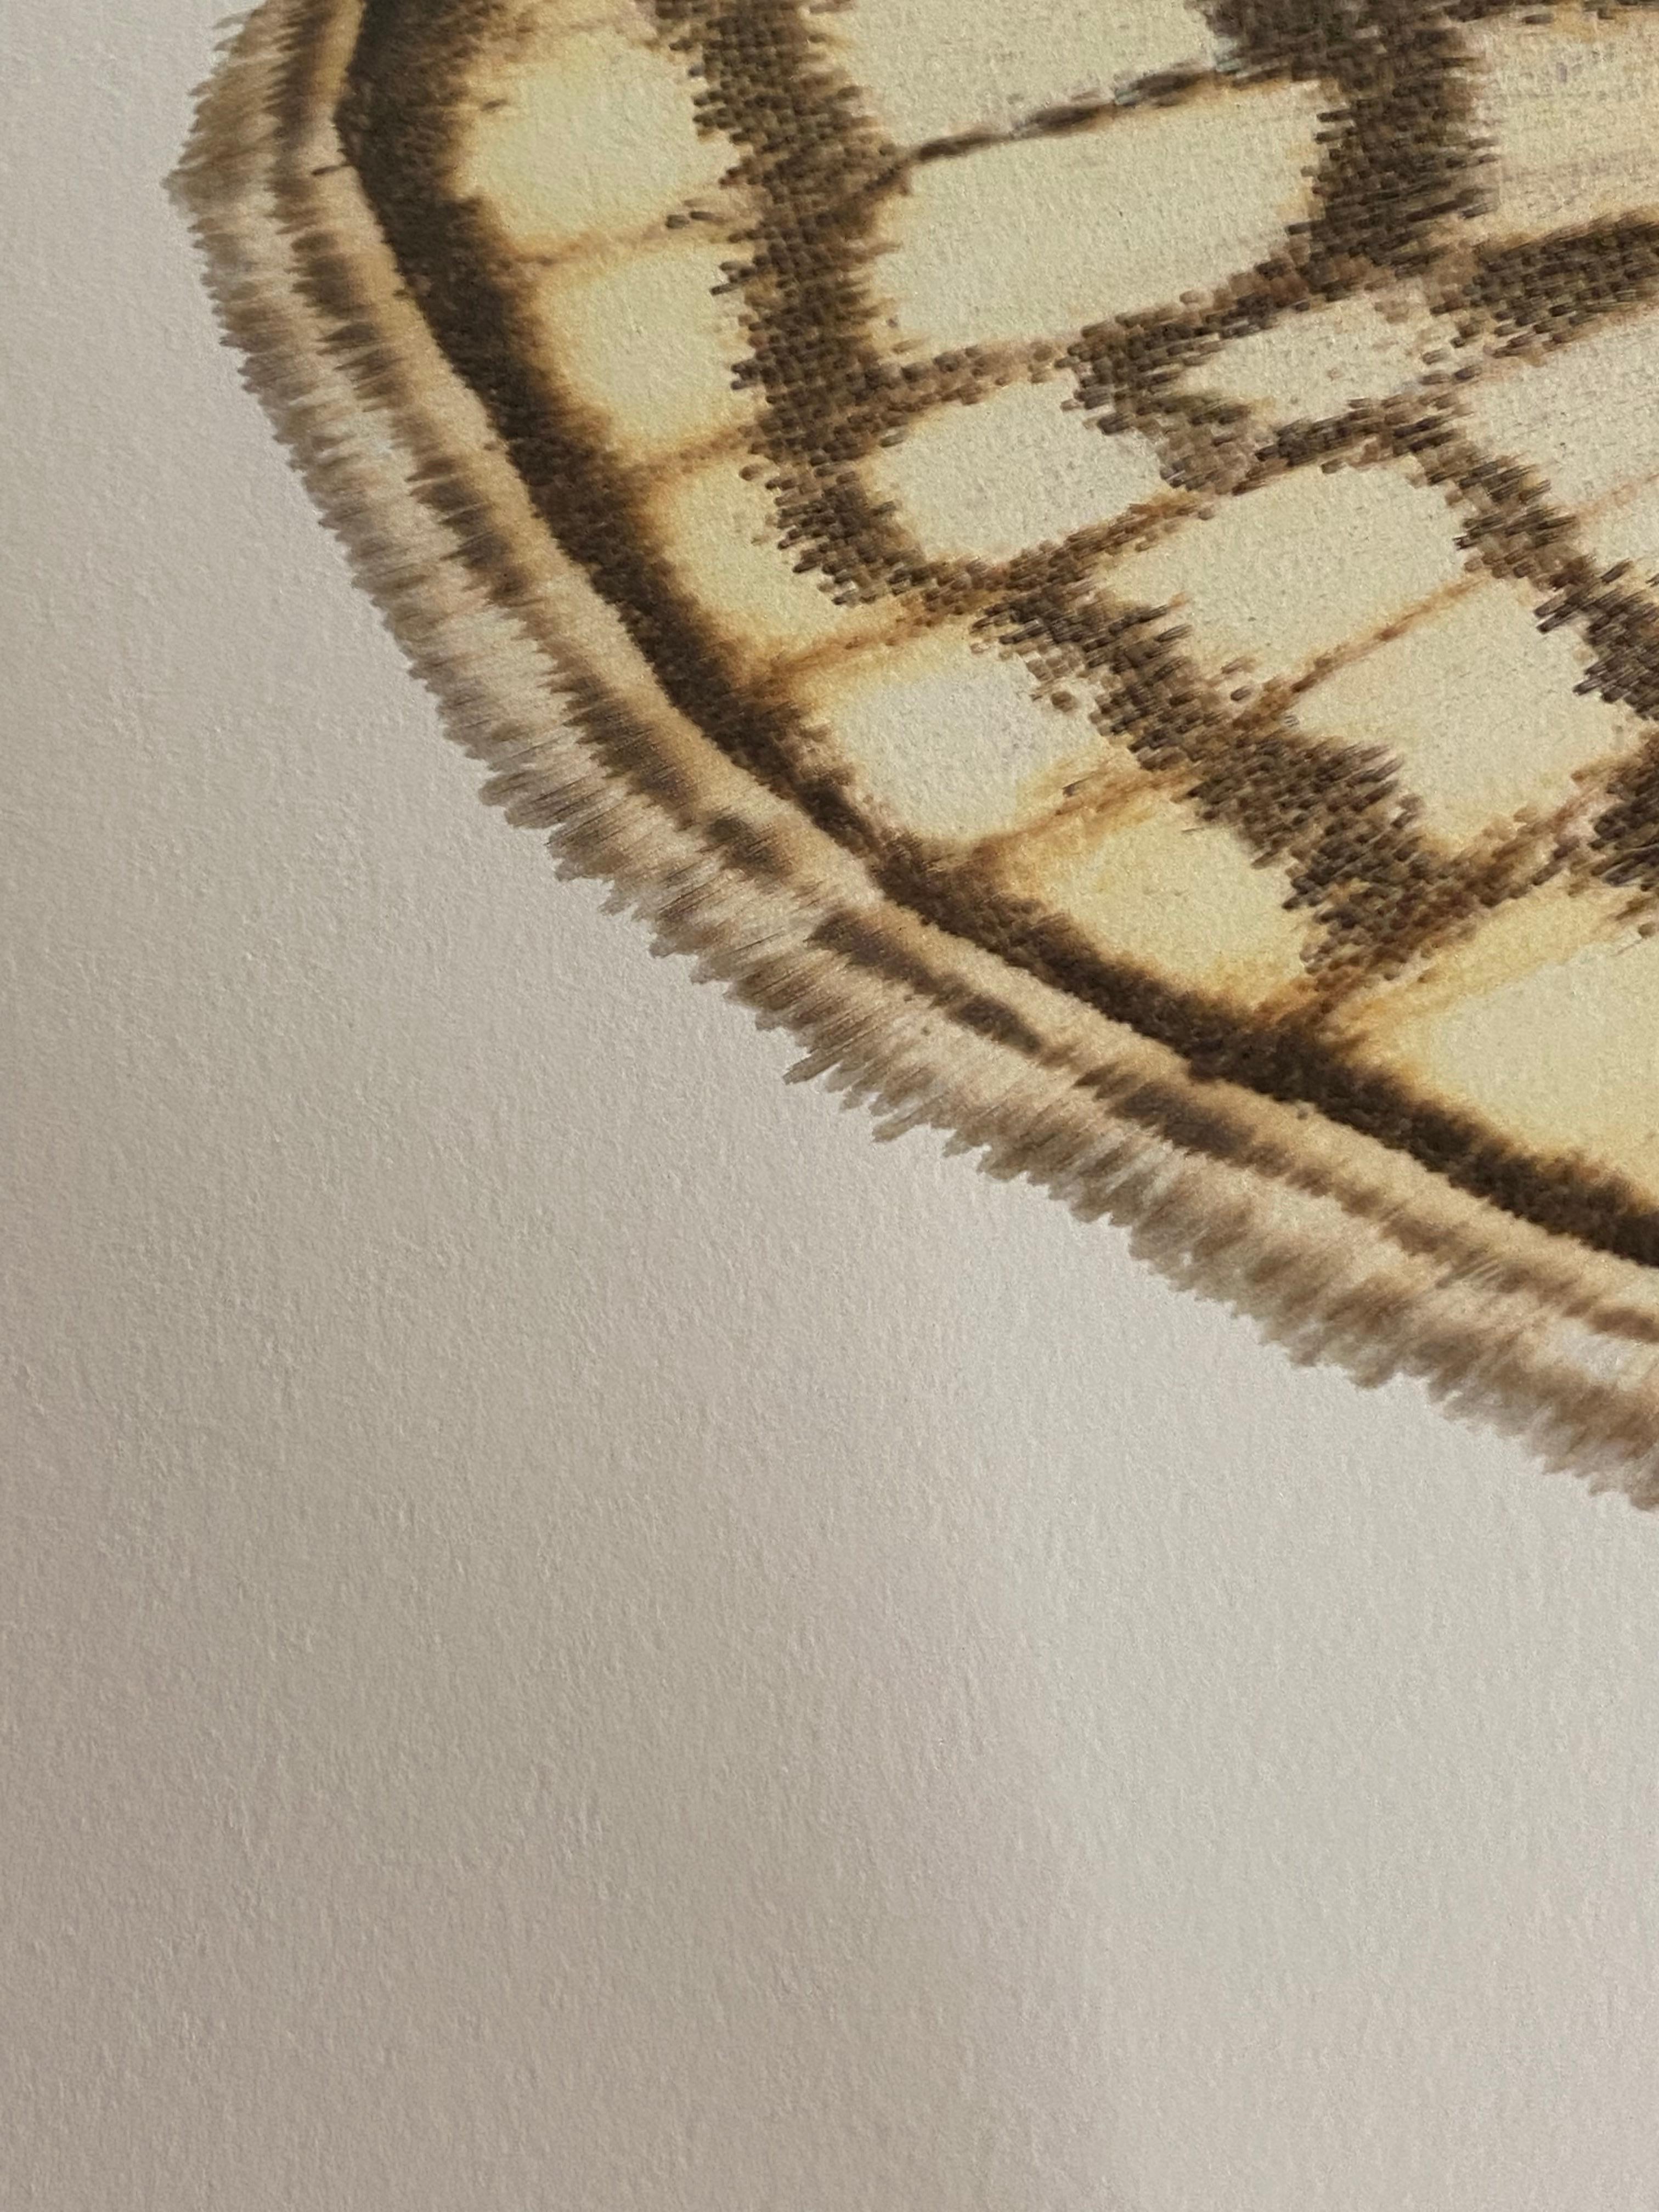 Dans cette impression pigmentaire d'archives hyper-détaillée sur papier aquarelle, un papillon de nuit avec des marques marron clair et jaune vif est dramatique sur un fond blanc uni. 

Le prix indiqué est le prix sans cadre. Veuillez vous